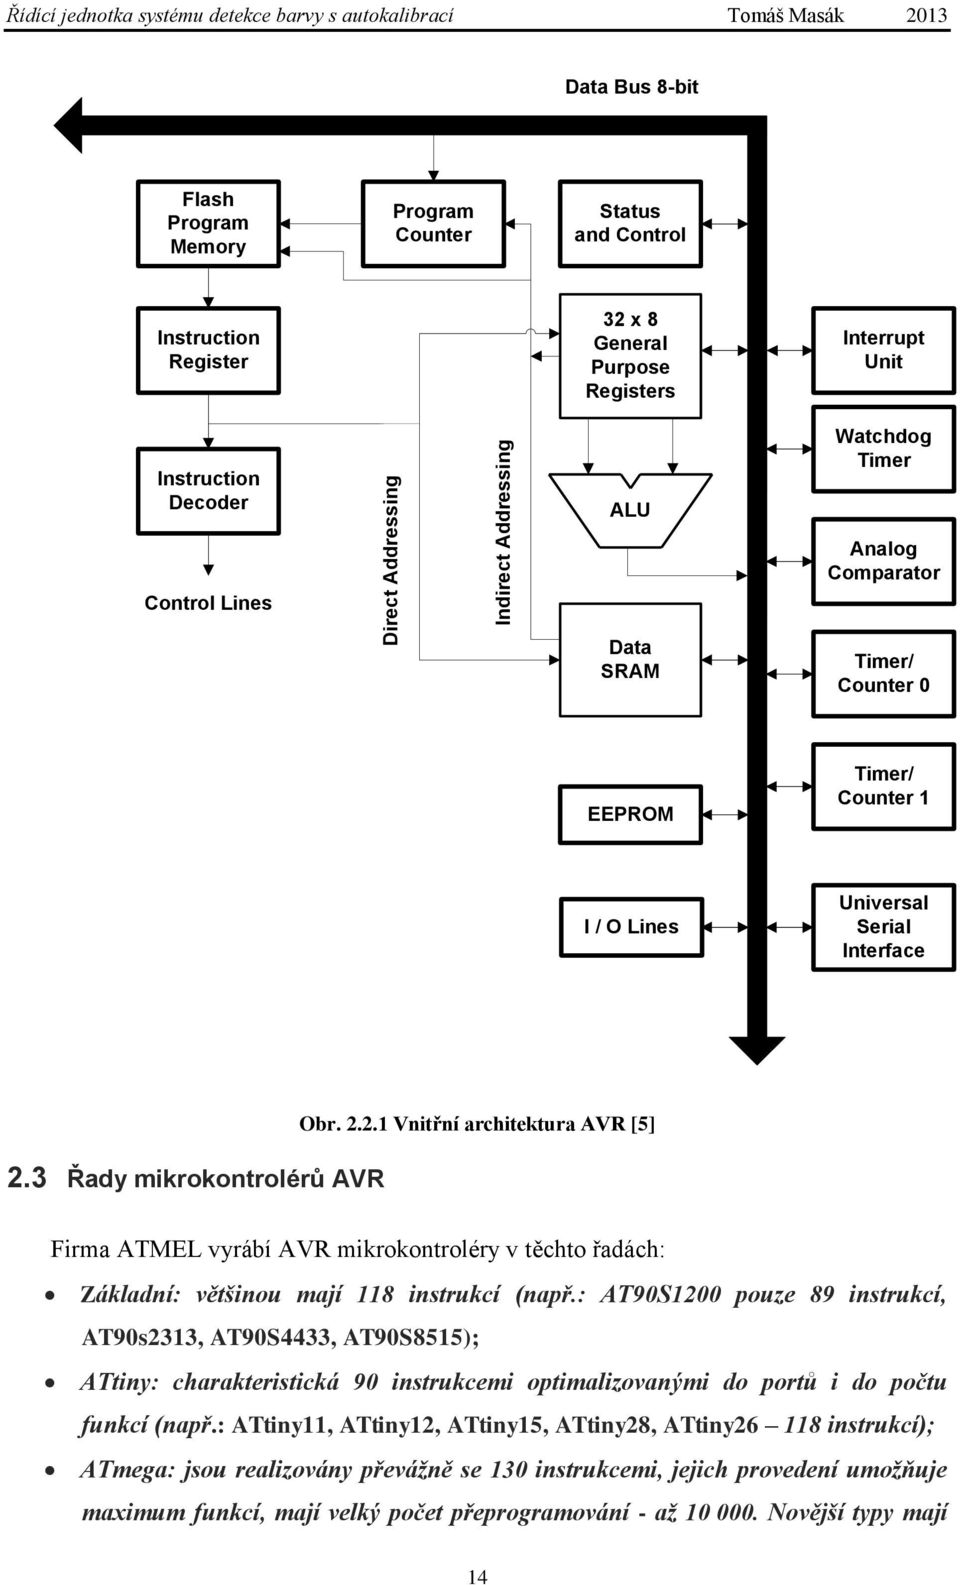 Universal Serial Interface 2.3 Řady mikrokontrolérů AVR Obr. 2.2.1 Vnitřní architektura AVR [5] Firma ATMEL vyrábí AVR mikrokontroléry v těchto řadách: Základní: většinou mají 118 instrukcí (např.